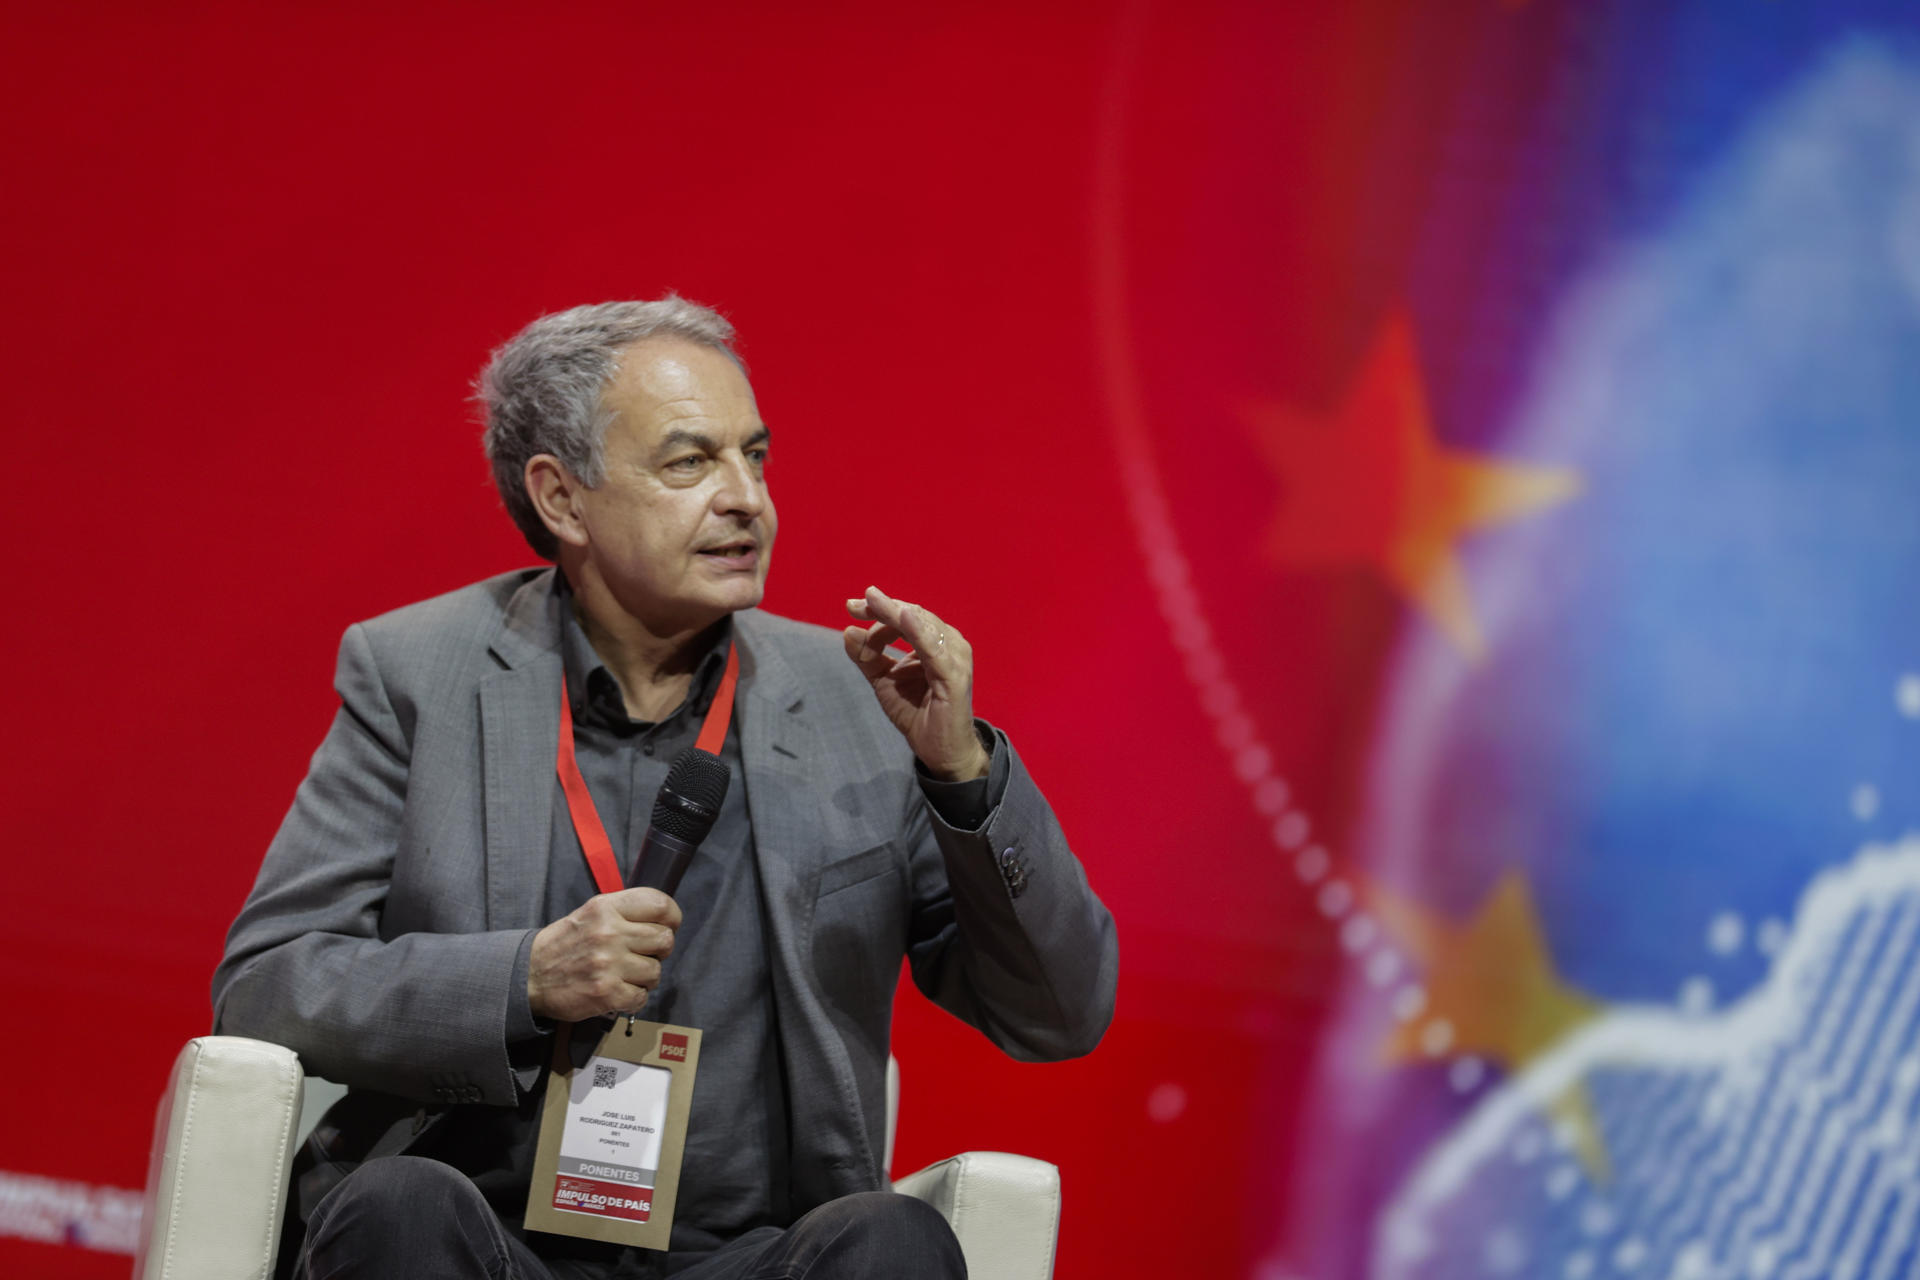 Zapatero reivindica l'amnistia com un acte de "generositat" amb l'independentisme